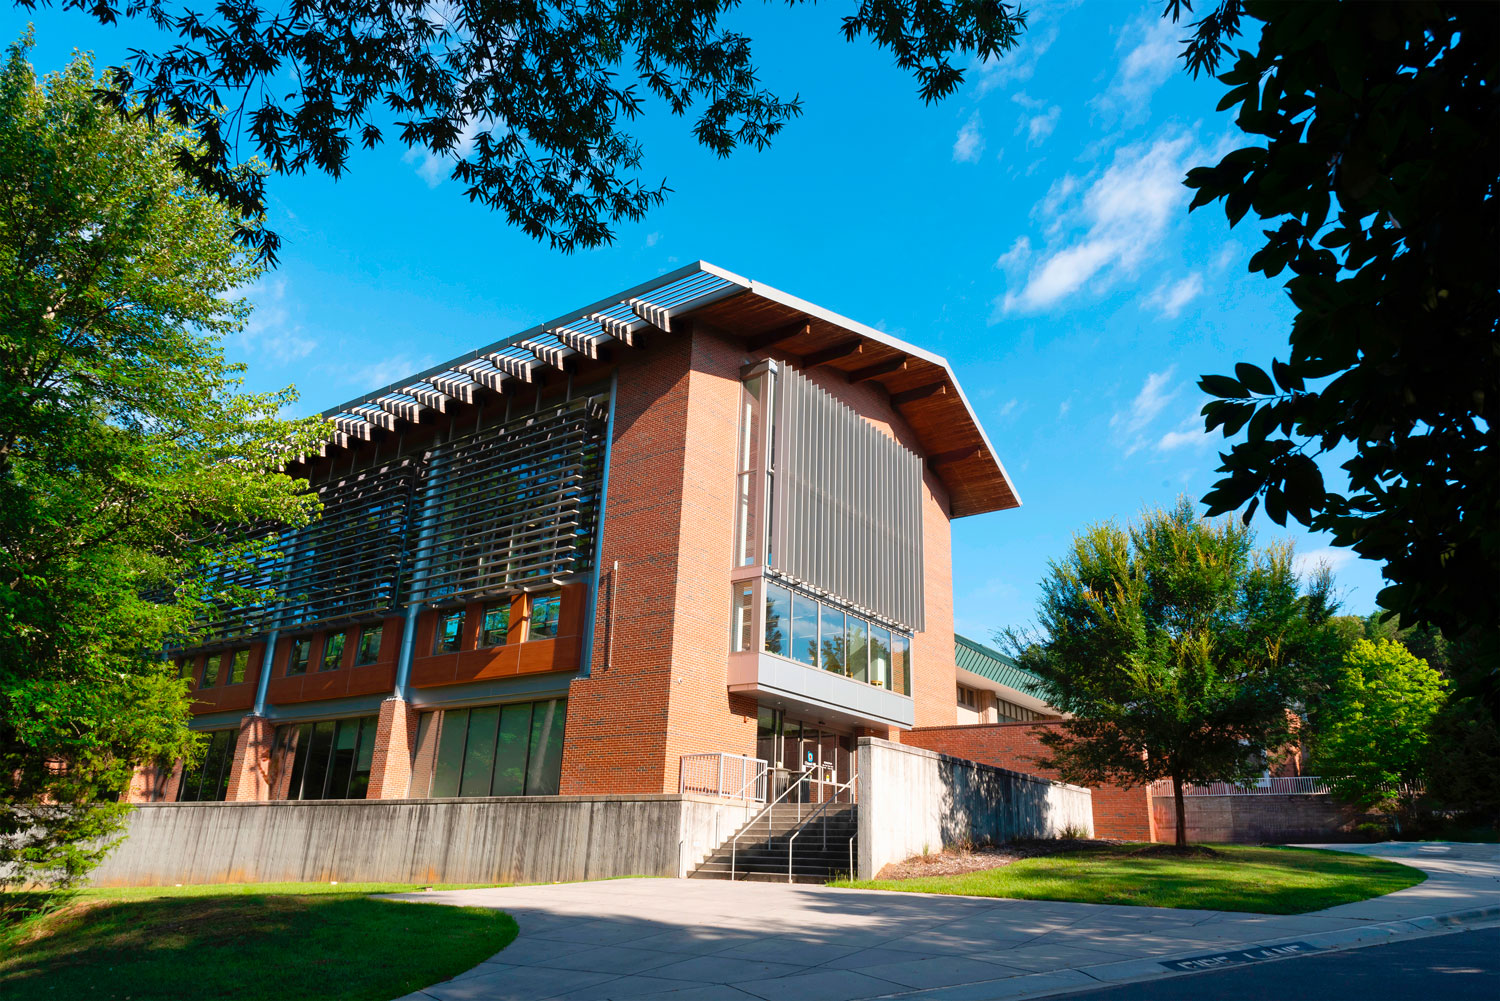 La bibliothèque de Chapel Hill (Caroline du Nord) est plus qu'un simple bâtiment renfermant des livres, c'est un centre d'activités destiné aux habitants de la ville et aux communautés environnantes.